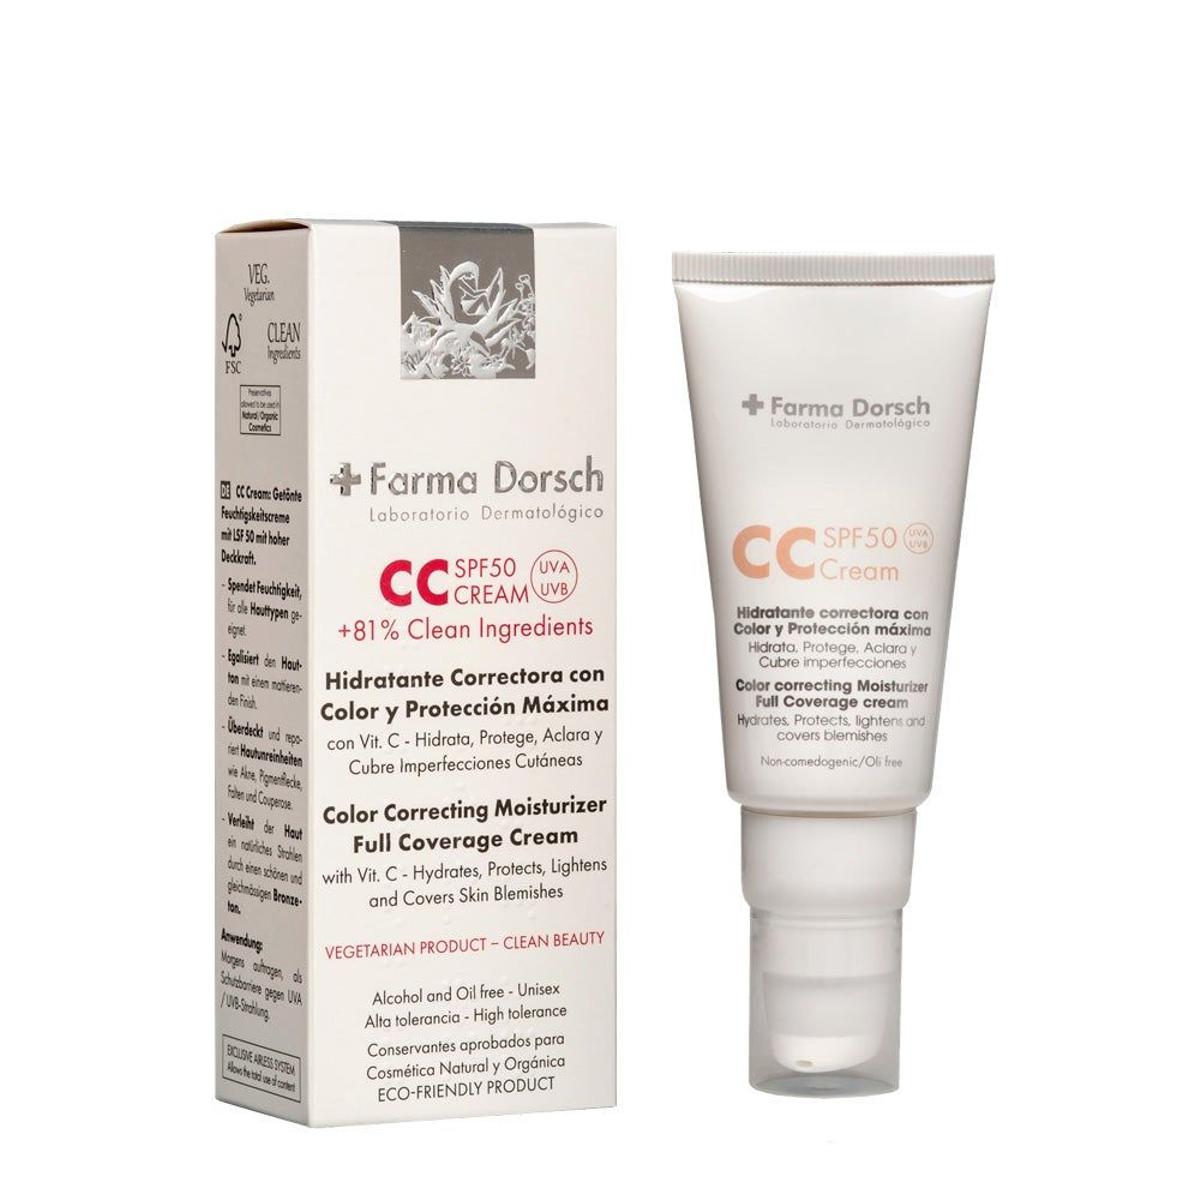 CC Cream SPF50 de +Farma Dorsch